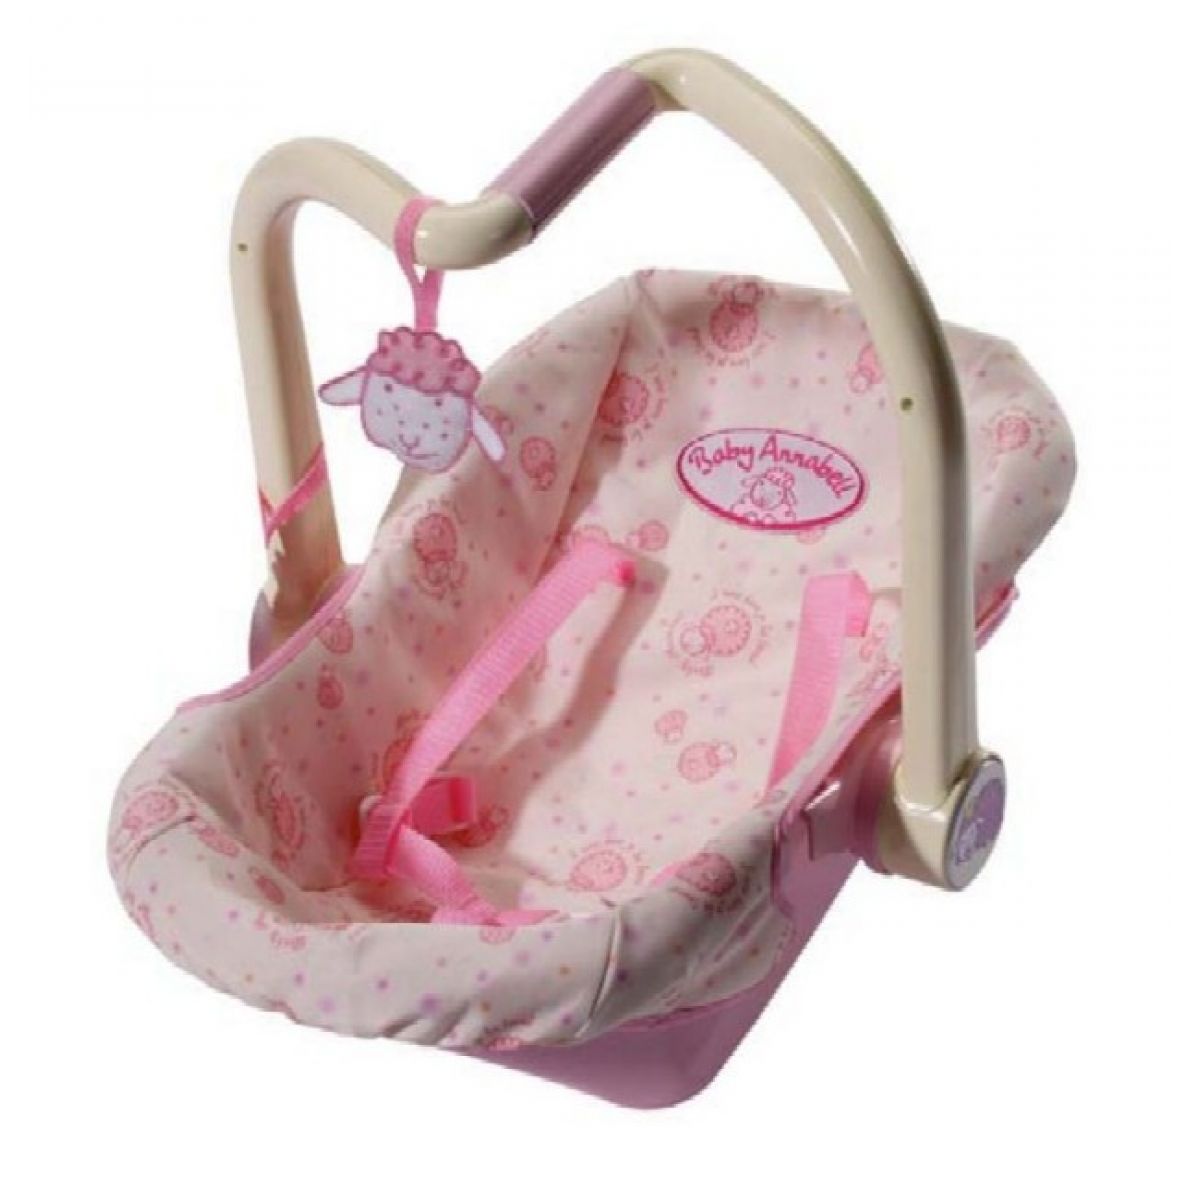 BabyAnnabell Moderní přenosná sedačka pro Baby Annabell Zapf